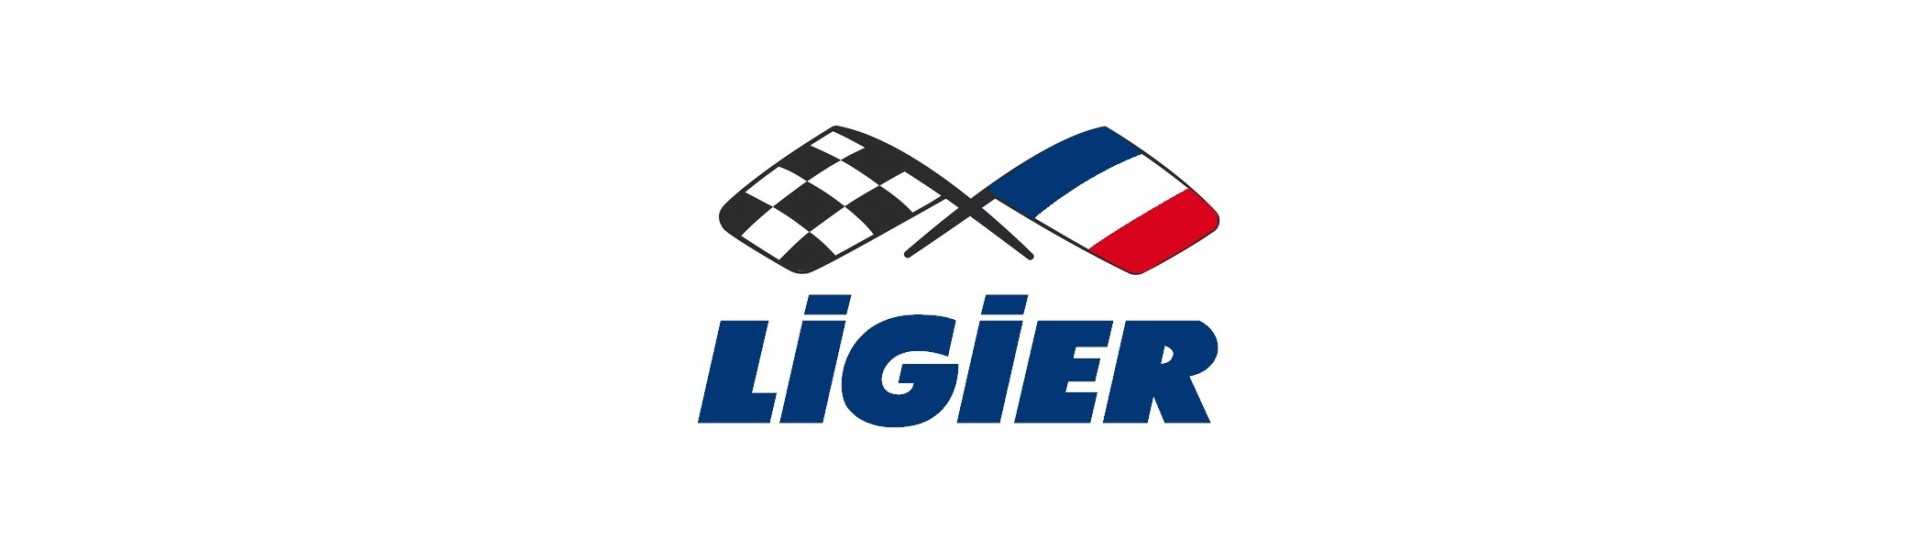 Porta externa alça melhor preço do carro sem licença Ligier